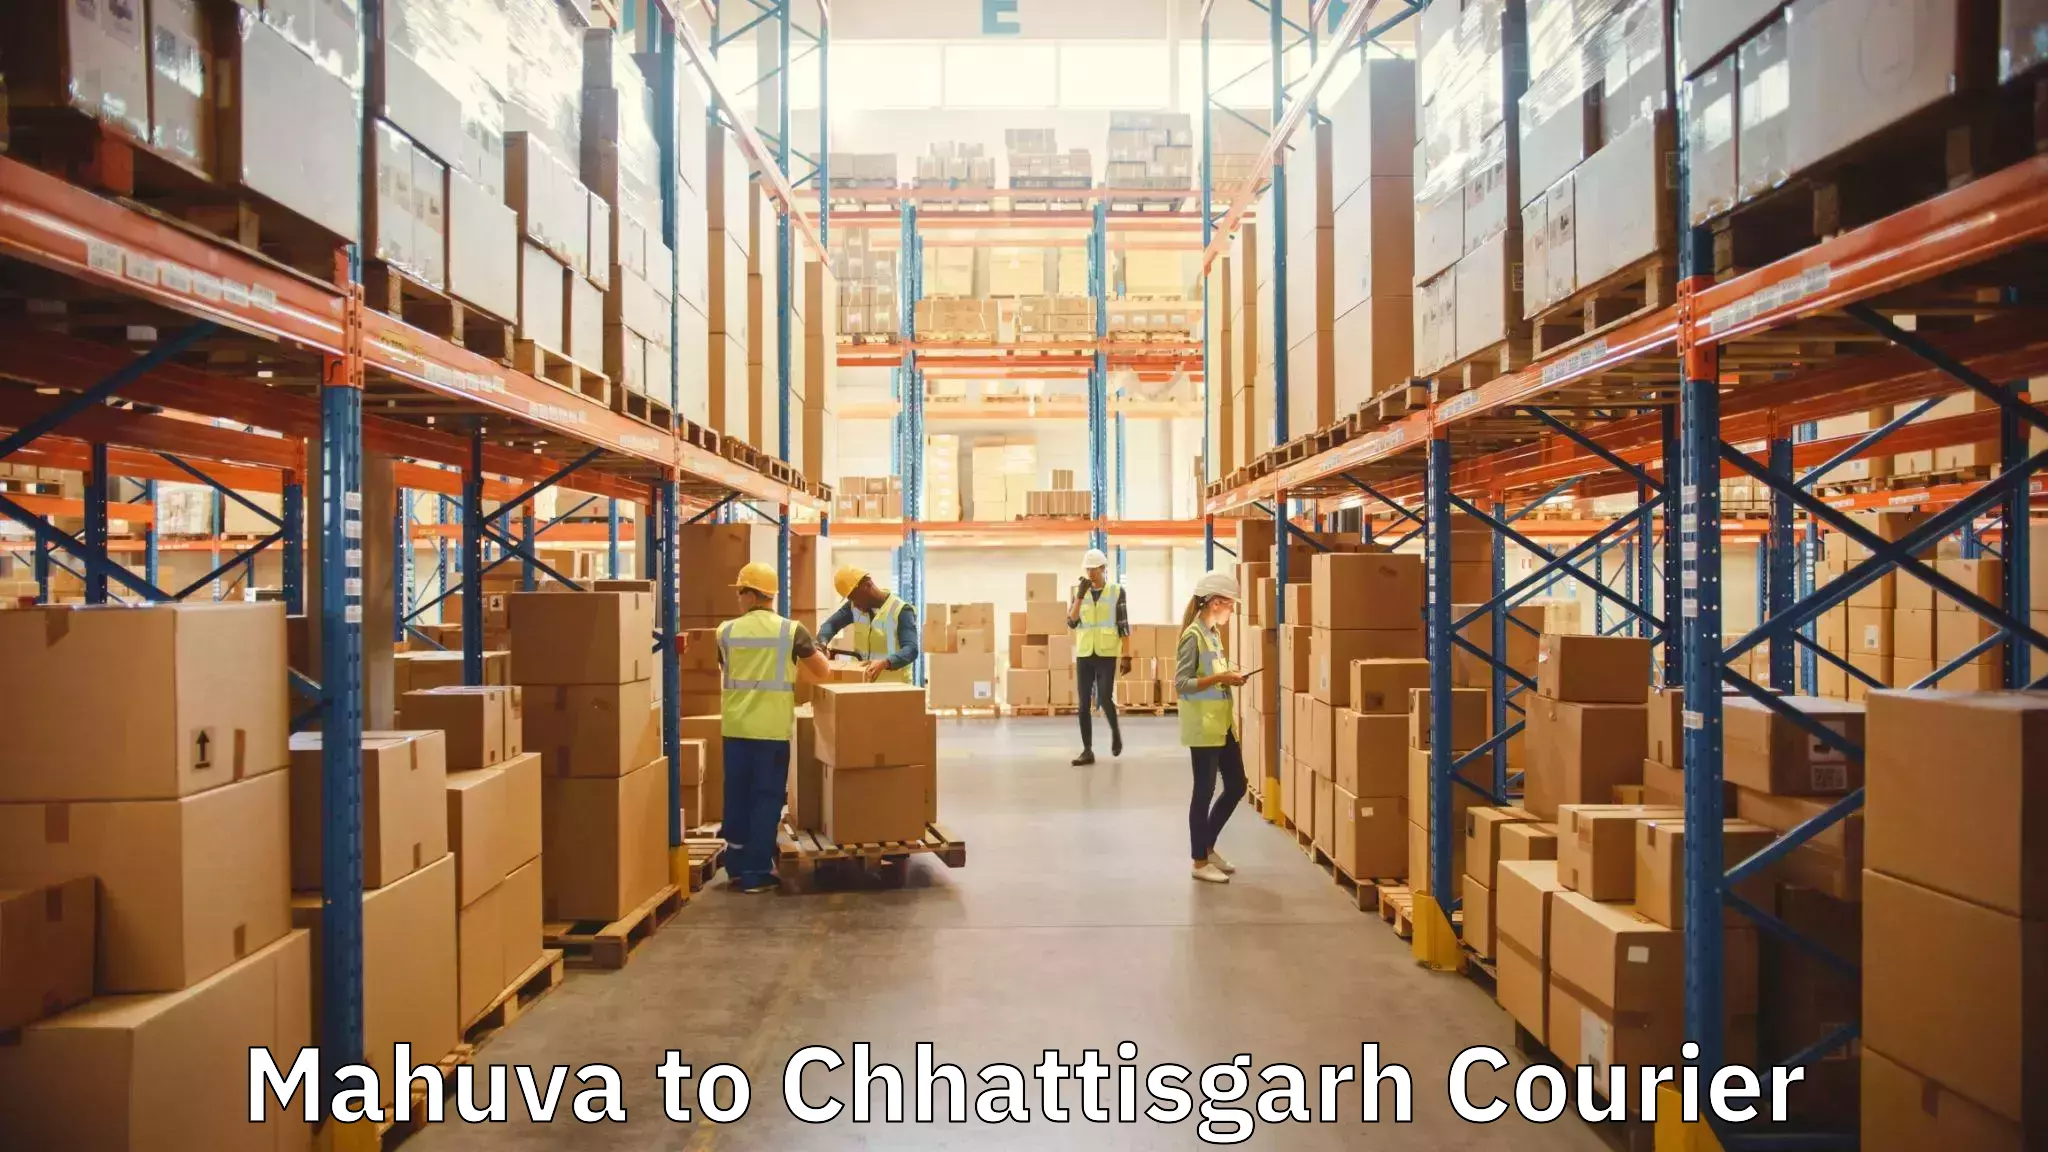 Professional moving company Mahuva to Wadrafnagar